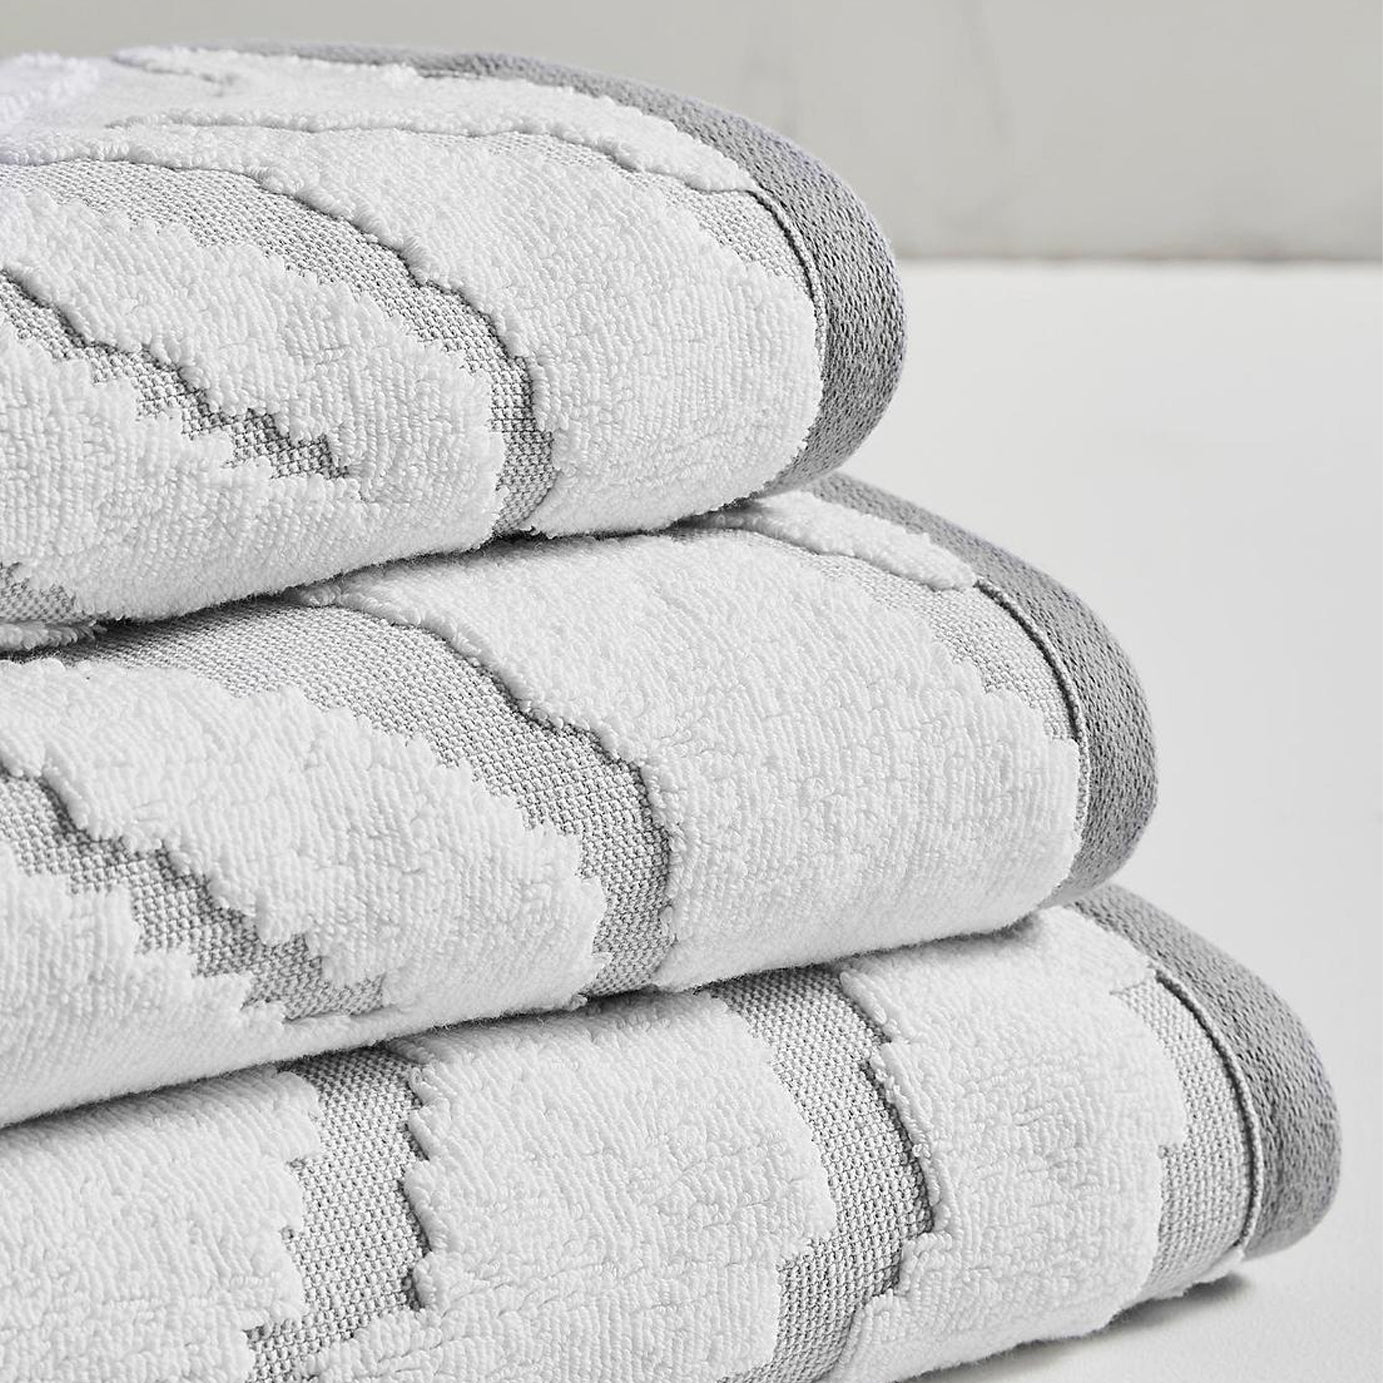 Zebra print towels - Super soft textured design